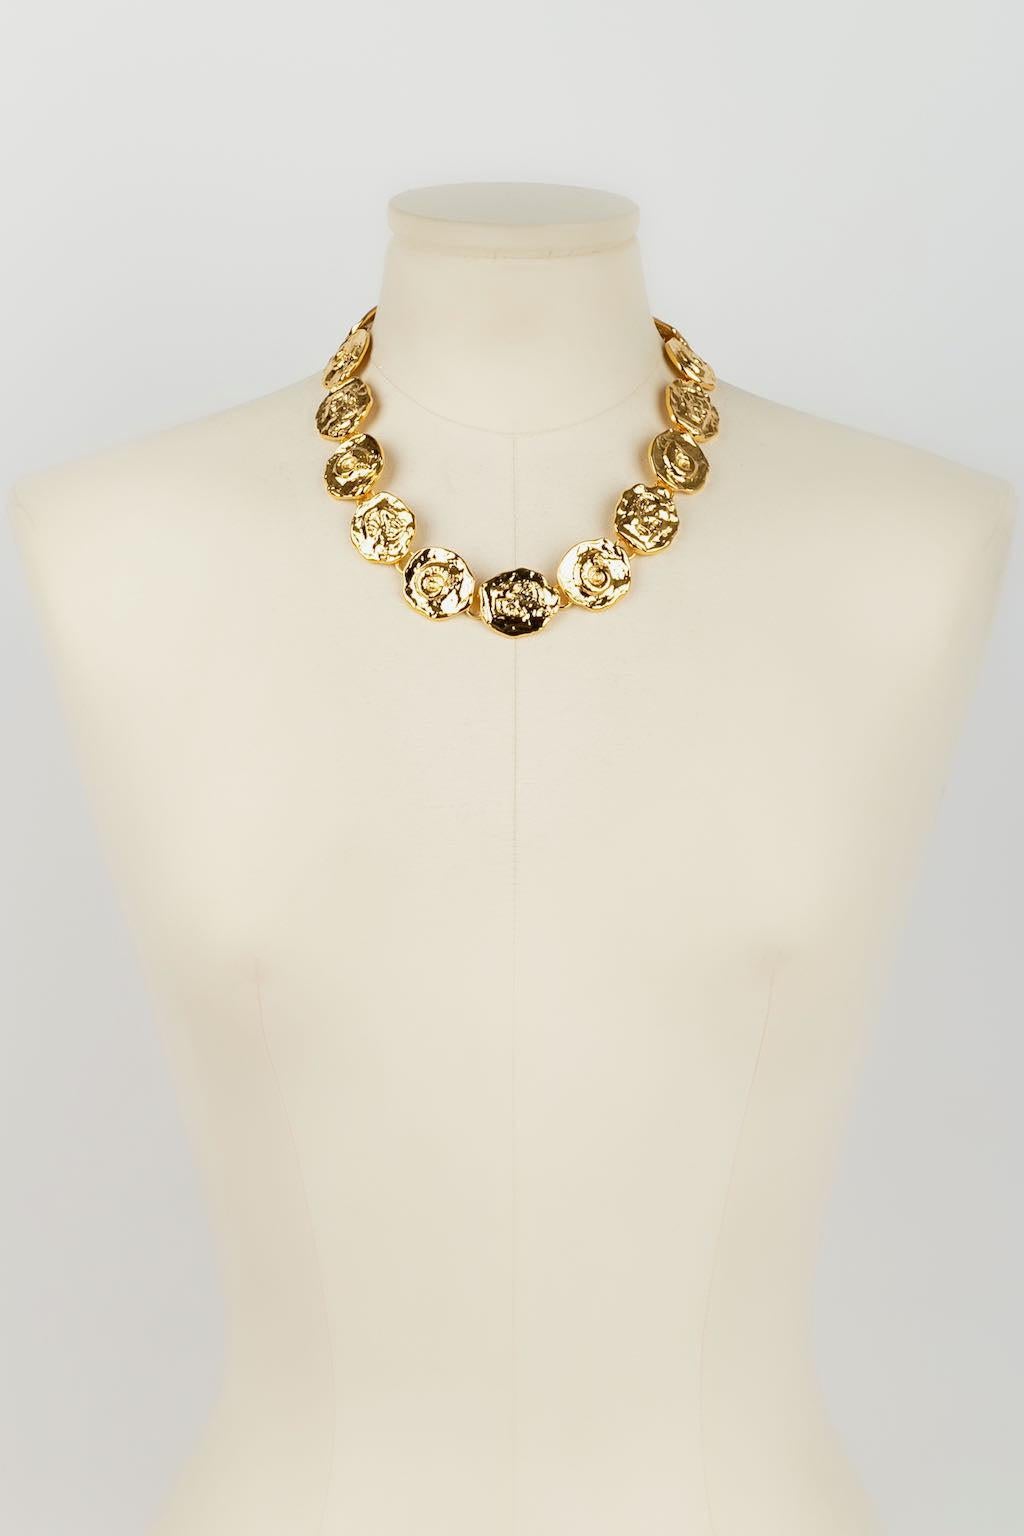 Yves Saint Laurent -(Made in France) Gegliederte Halskette aus goldenem Metall.

Zusätzliche Informationen: 
Abmessungen: Länge: von 44 cm bis 49 cm - Höhe: 2,5 cm
Zustand: Sehr guter Zustand
Verkäufer-Referenznummer: BC173